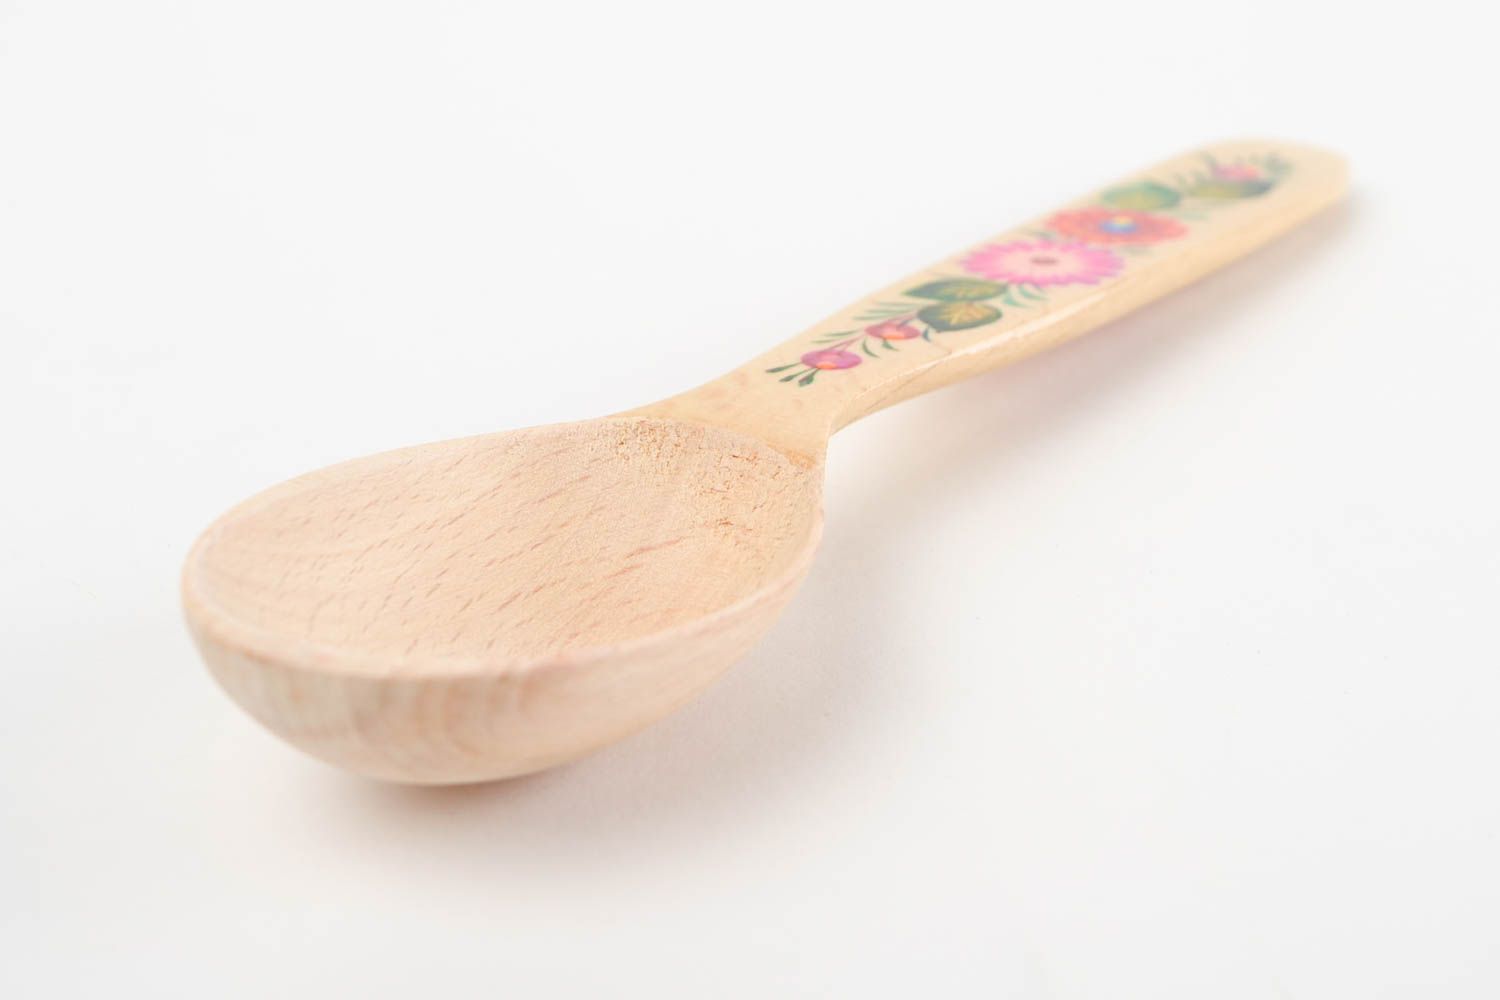 Handmade wooden spoon stylish painted spoon beautiful kitchen utensil photo 5